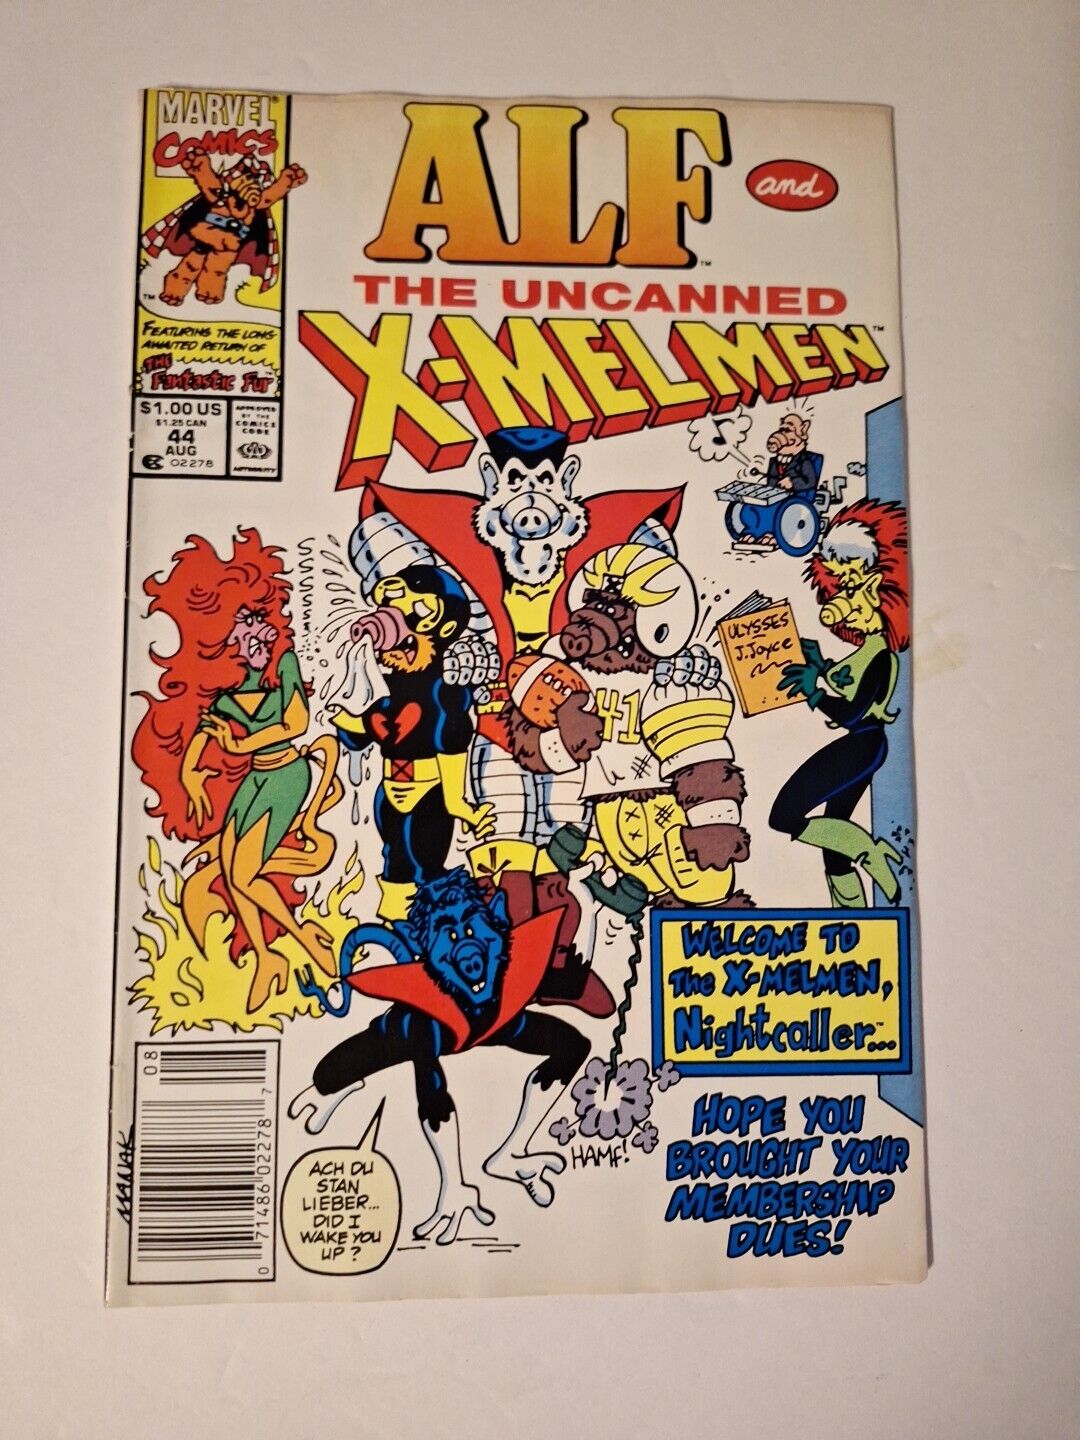 Alf Comics - Issue #44 - The Uncanned X-Melmen (Marvel Comics) X-Men parody